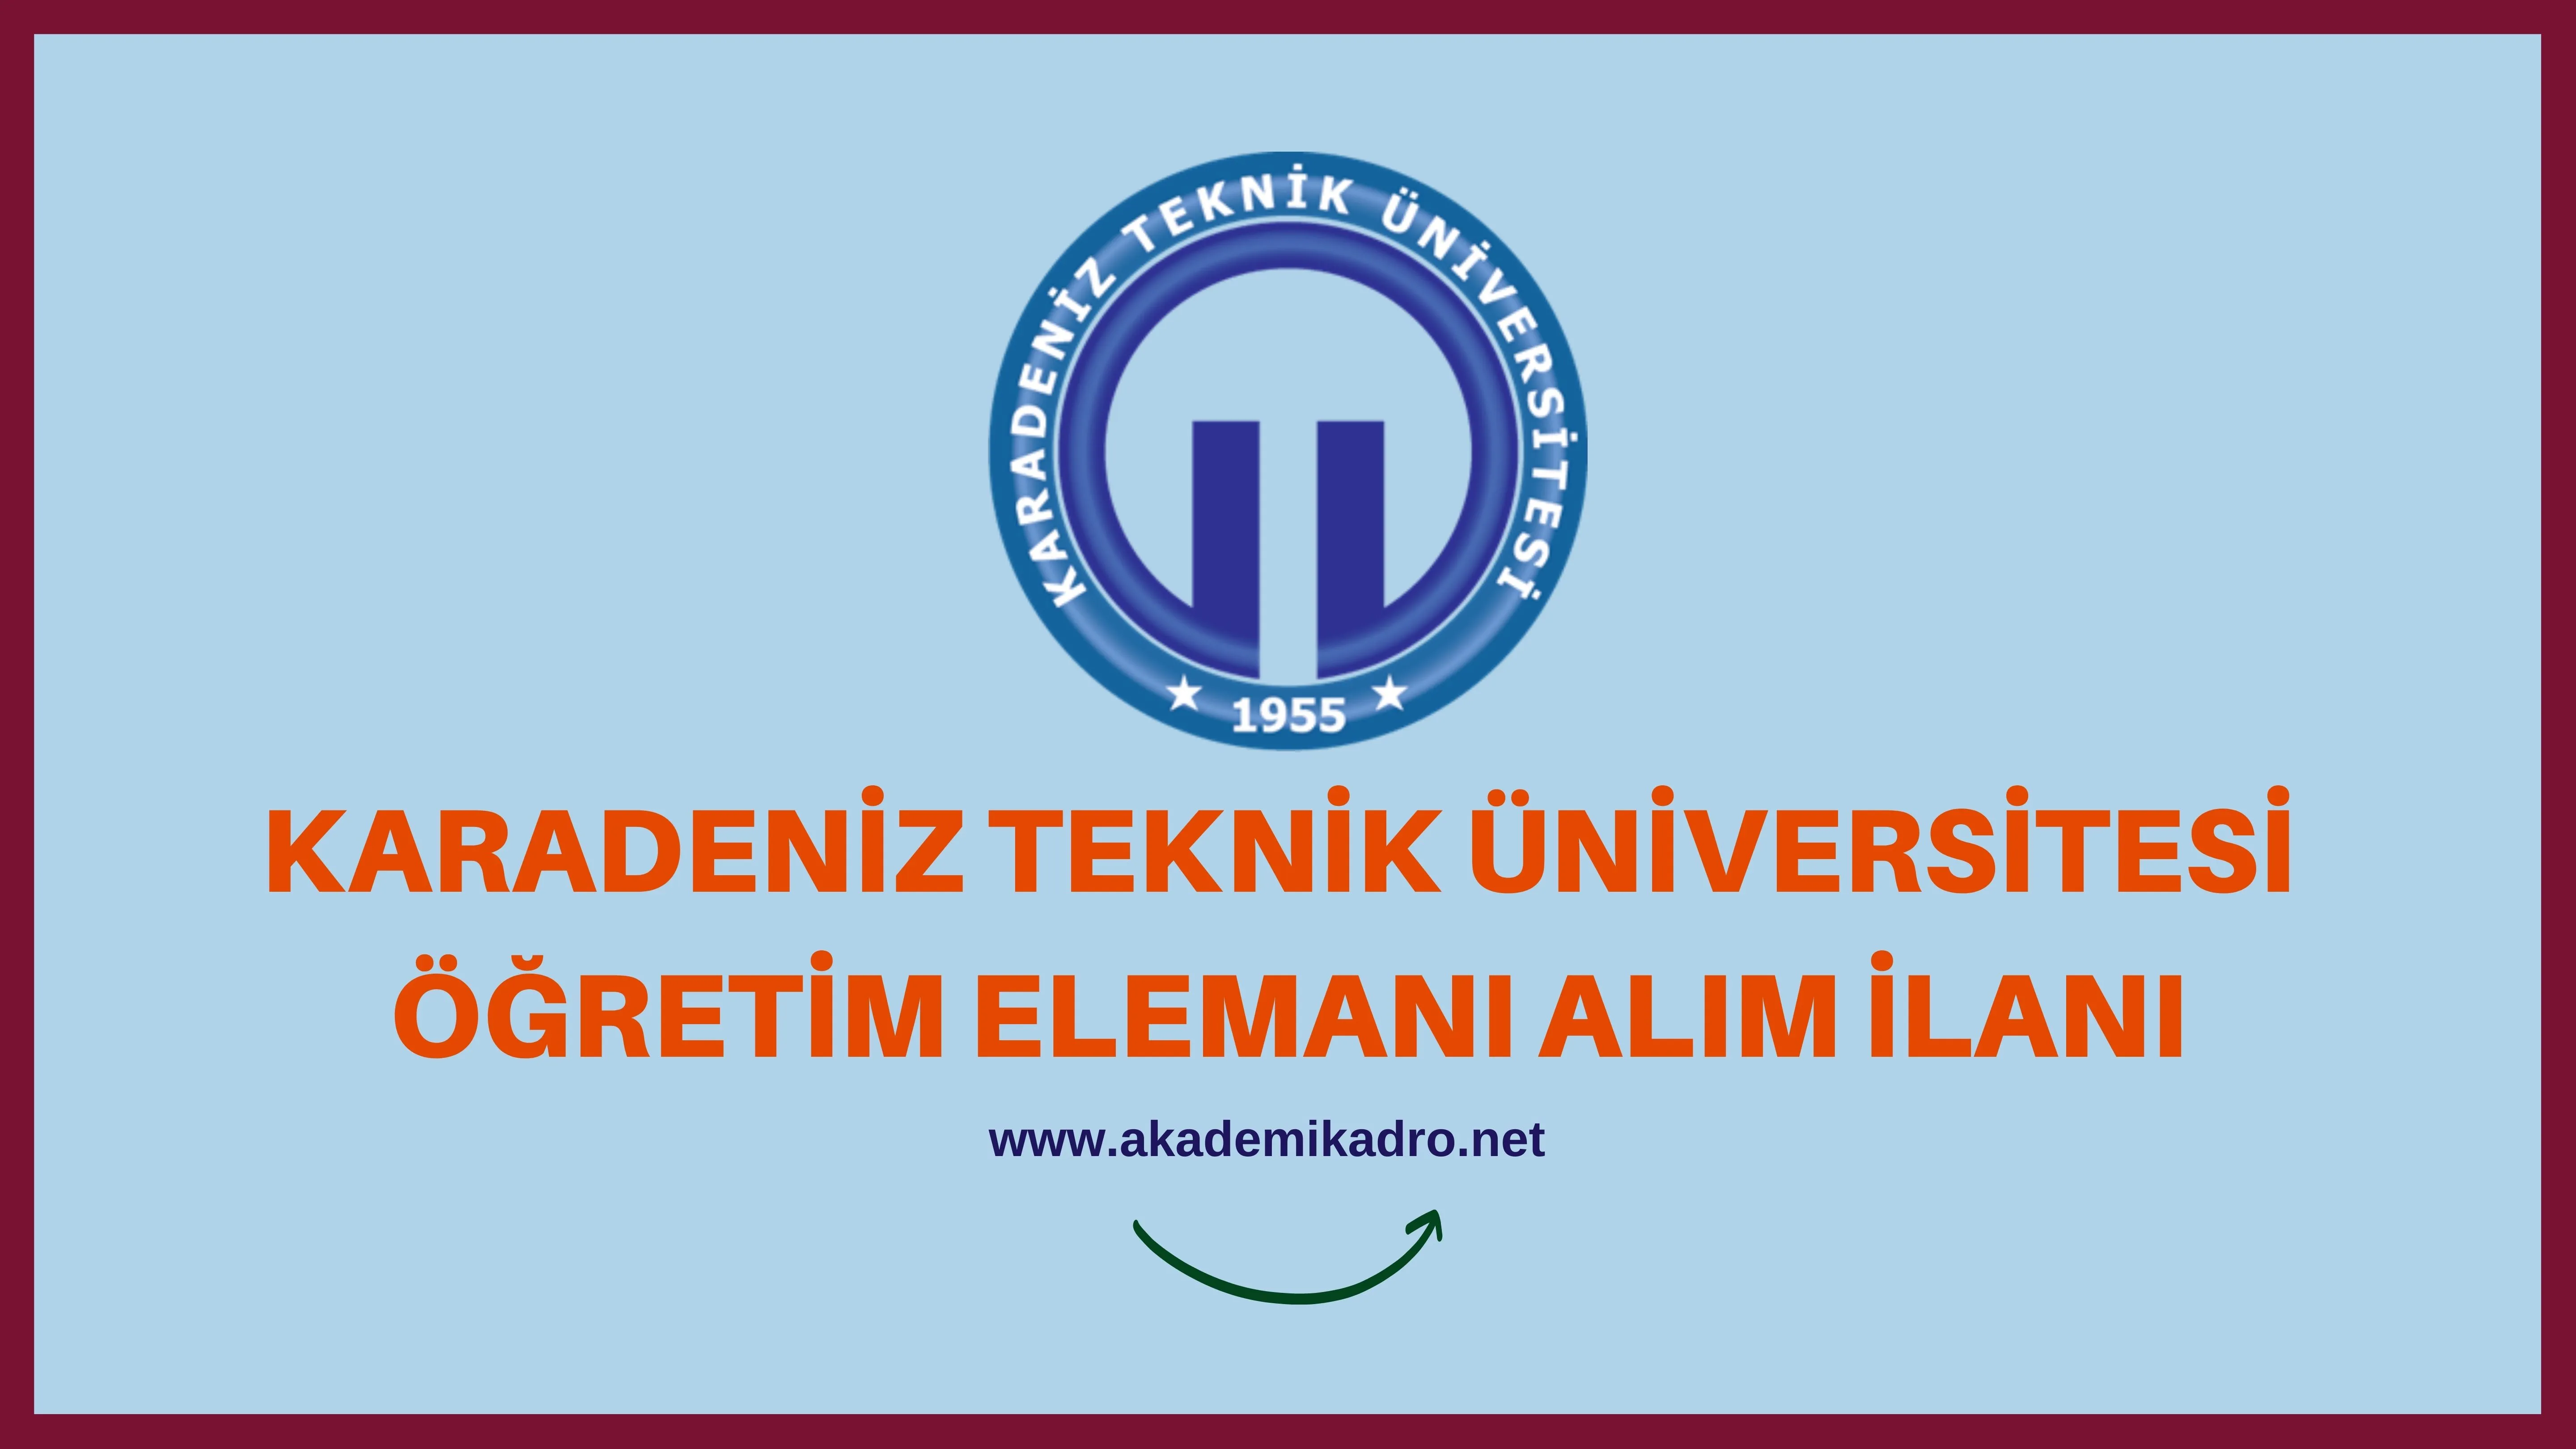 Karadeniz Teknik Üniversitesi Öğretim Görevlisi alacaktır. Son başvuru tarihi 03 Kasım 2022